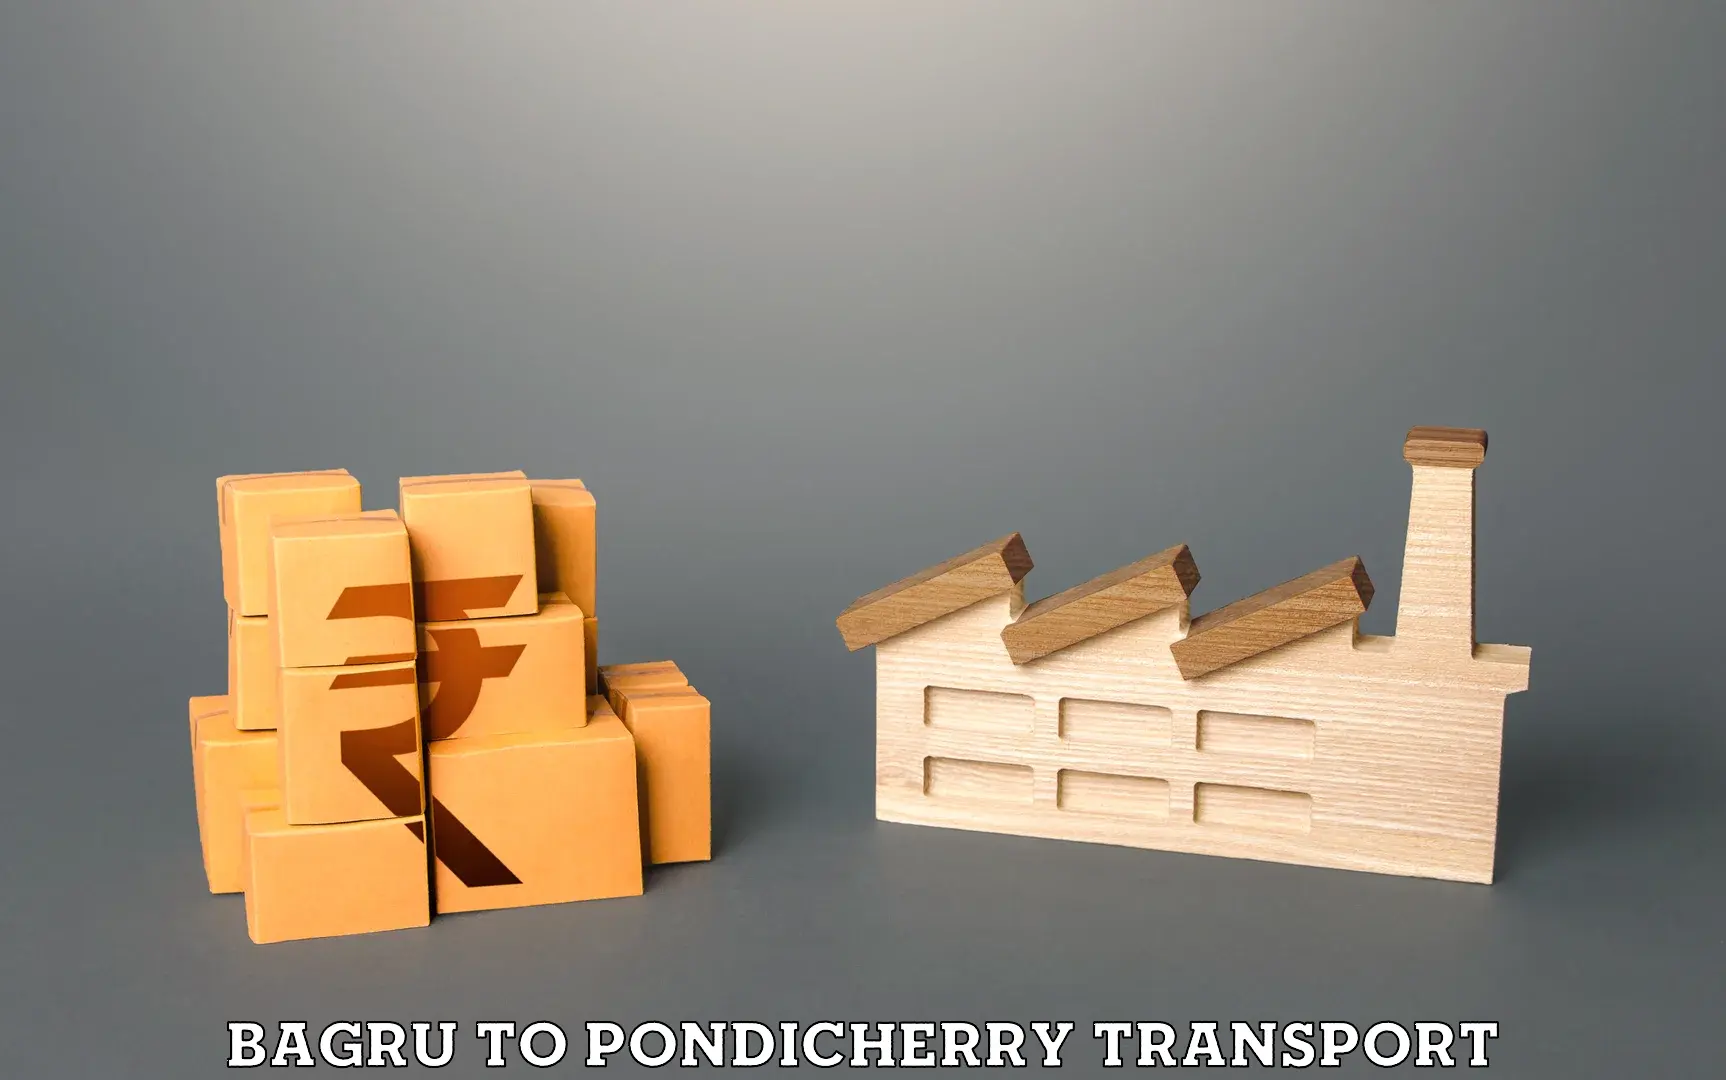 Nearest transport service Bagru to Pondicherry University